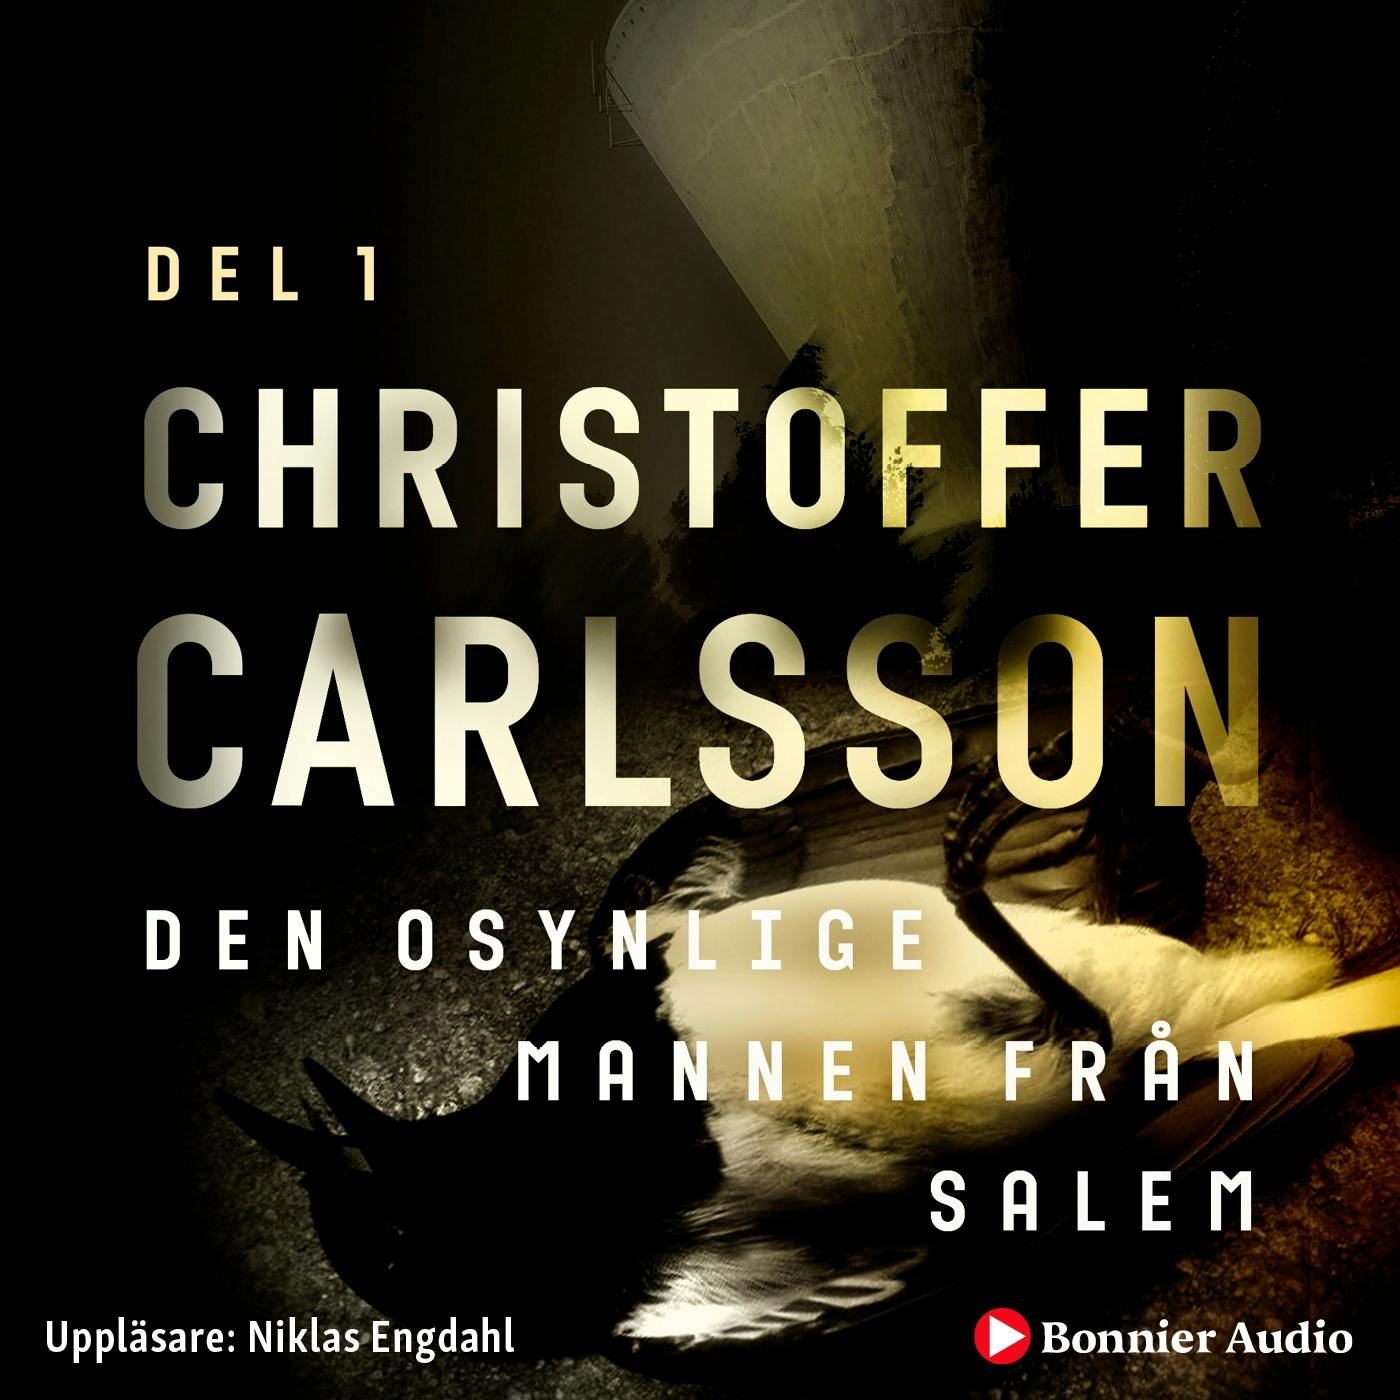 Den osynlige mannen från Salem - Christoffer Carlsson